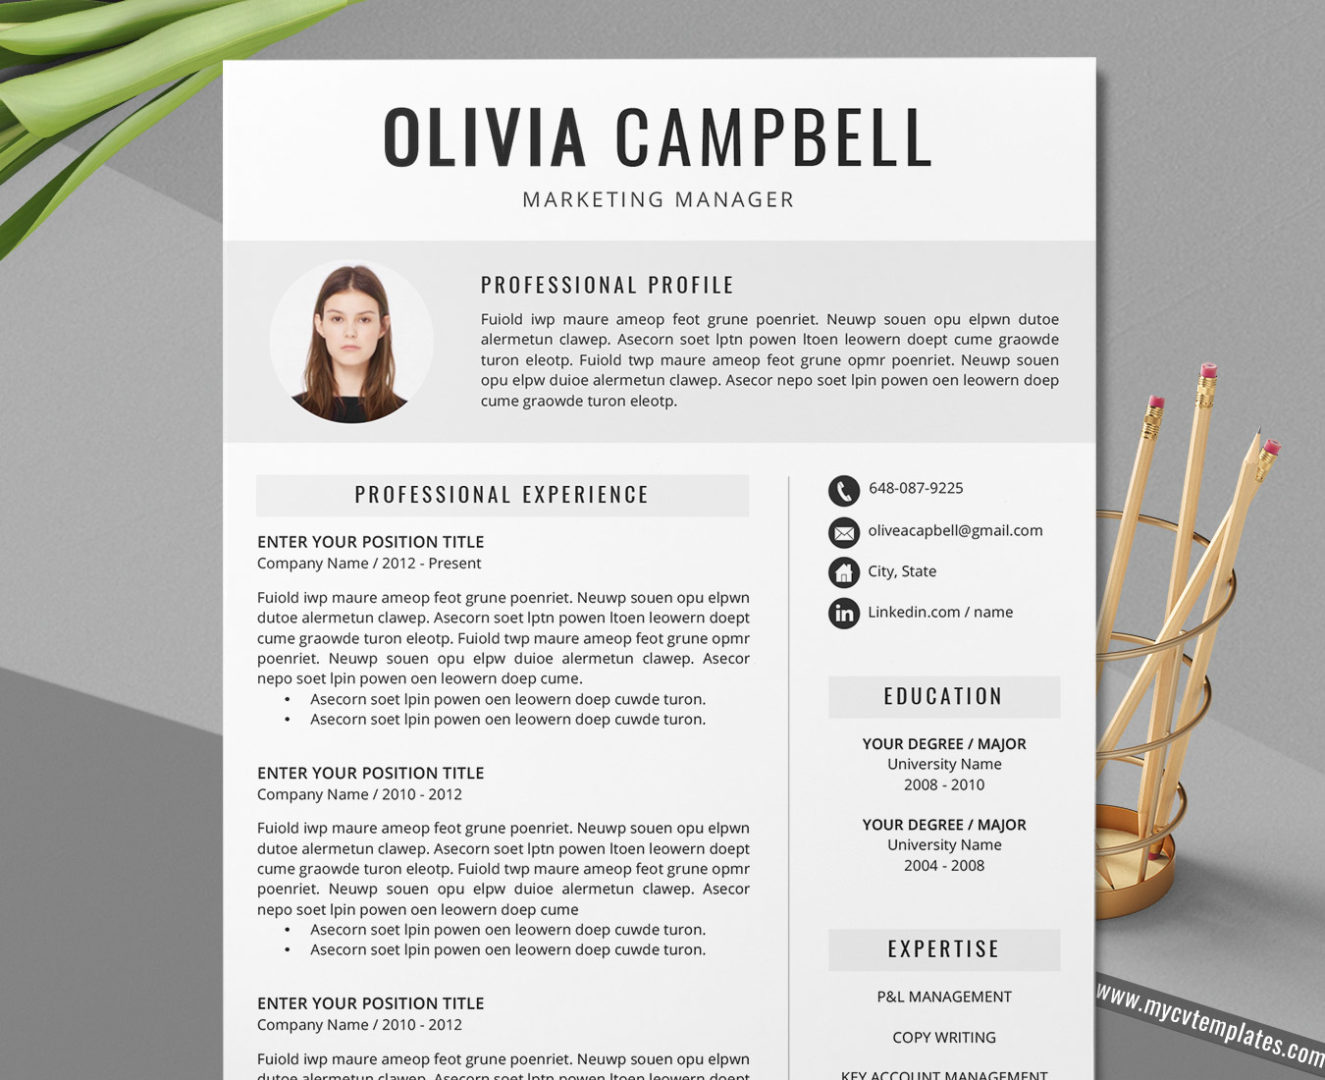 Student CV Template, Curriculum Vitae, Simple CV Format Design, Modern